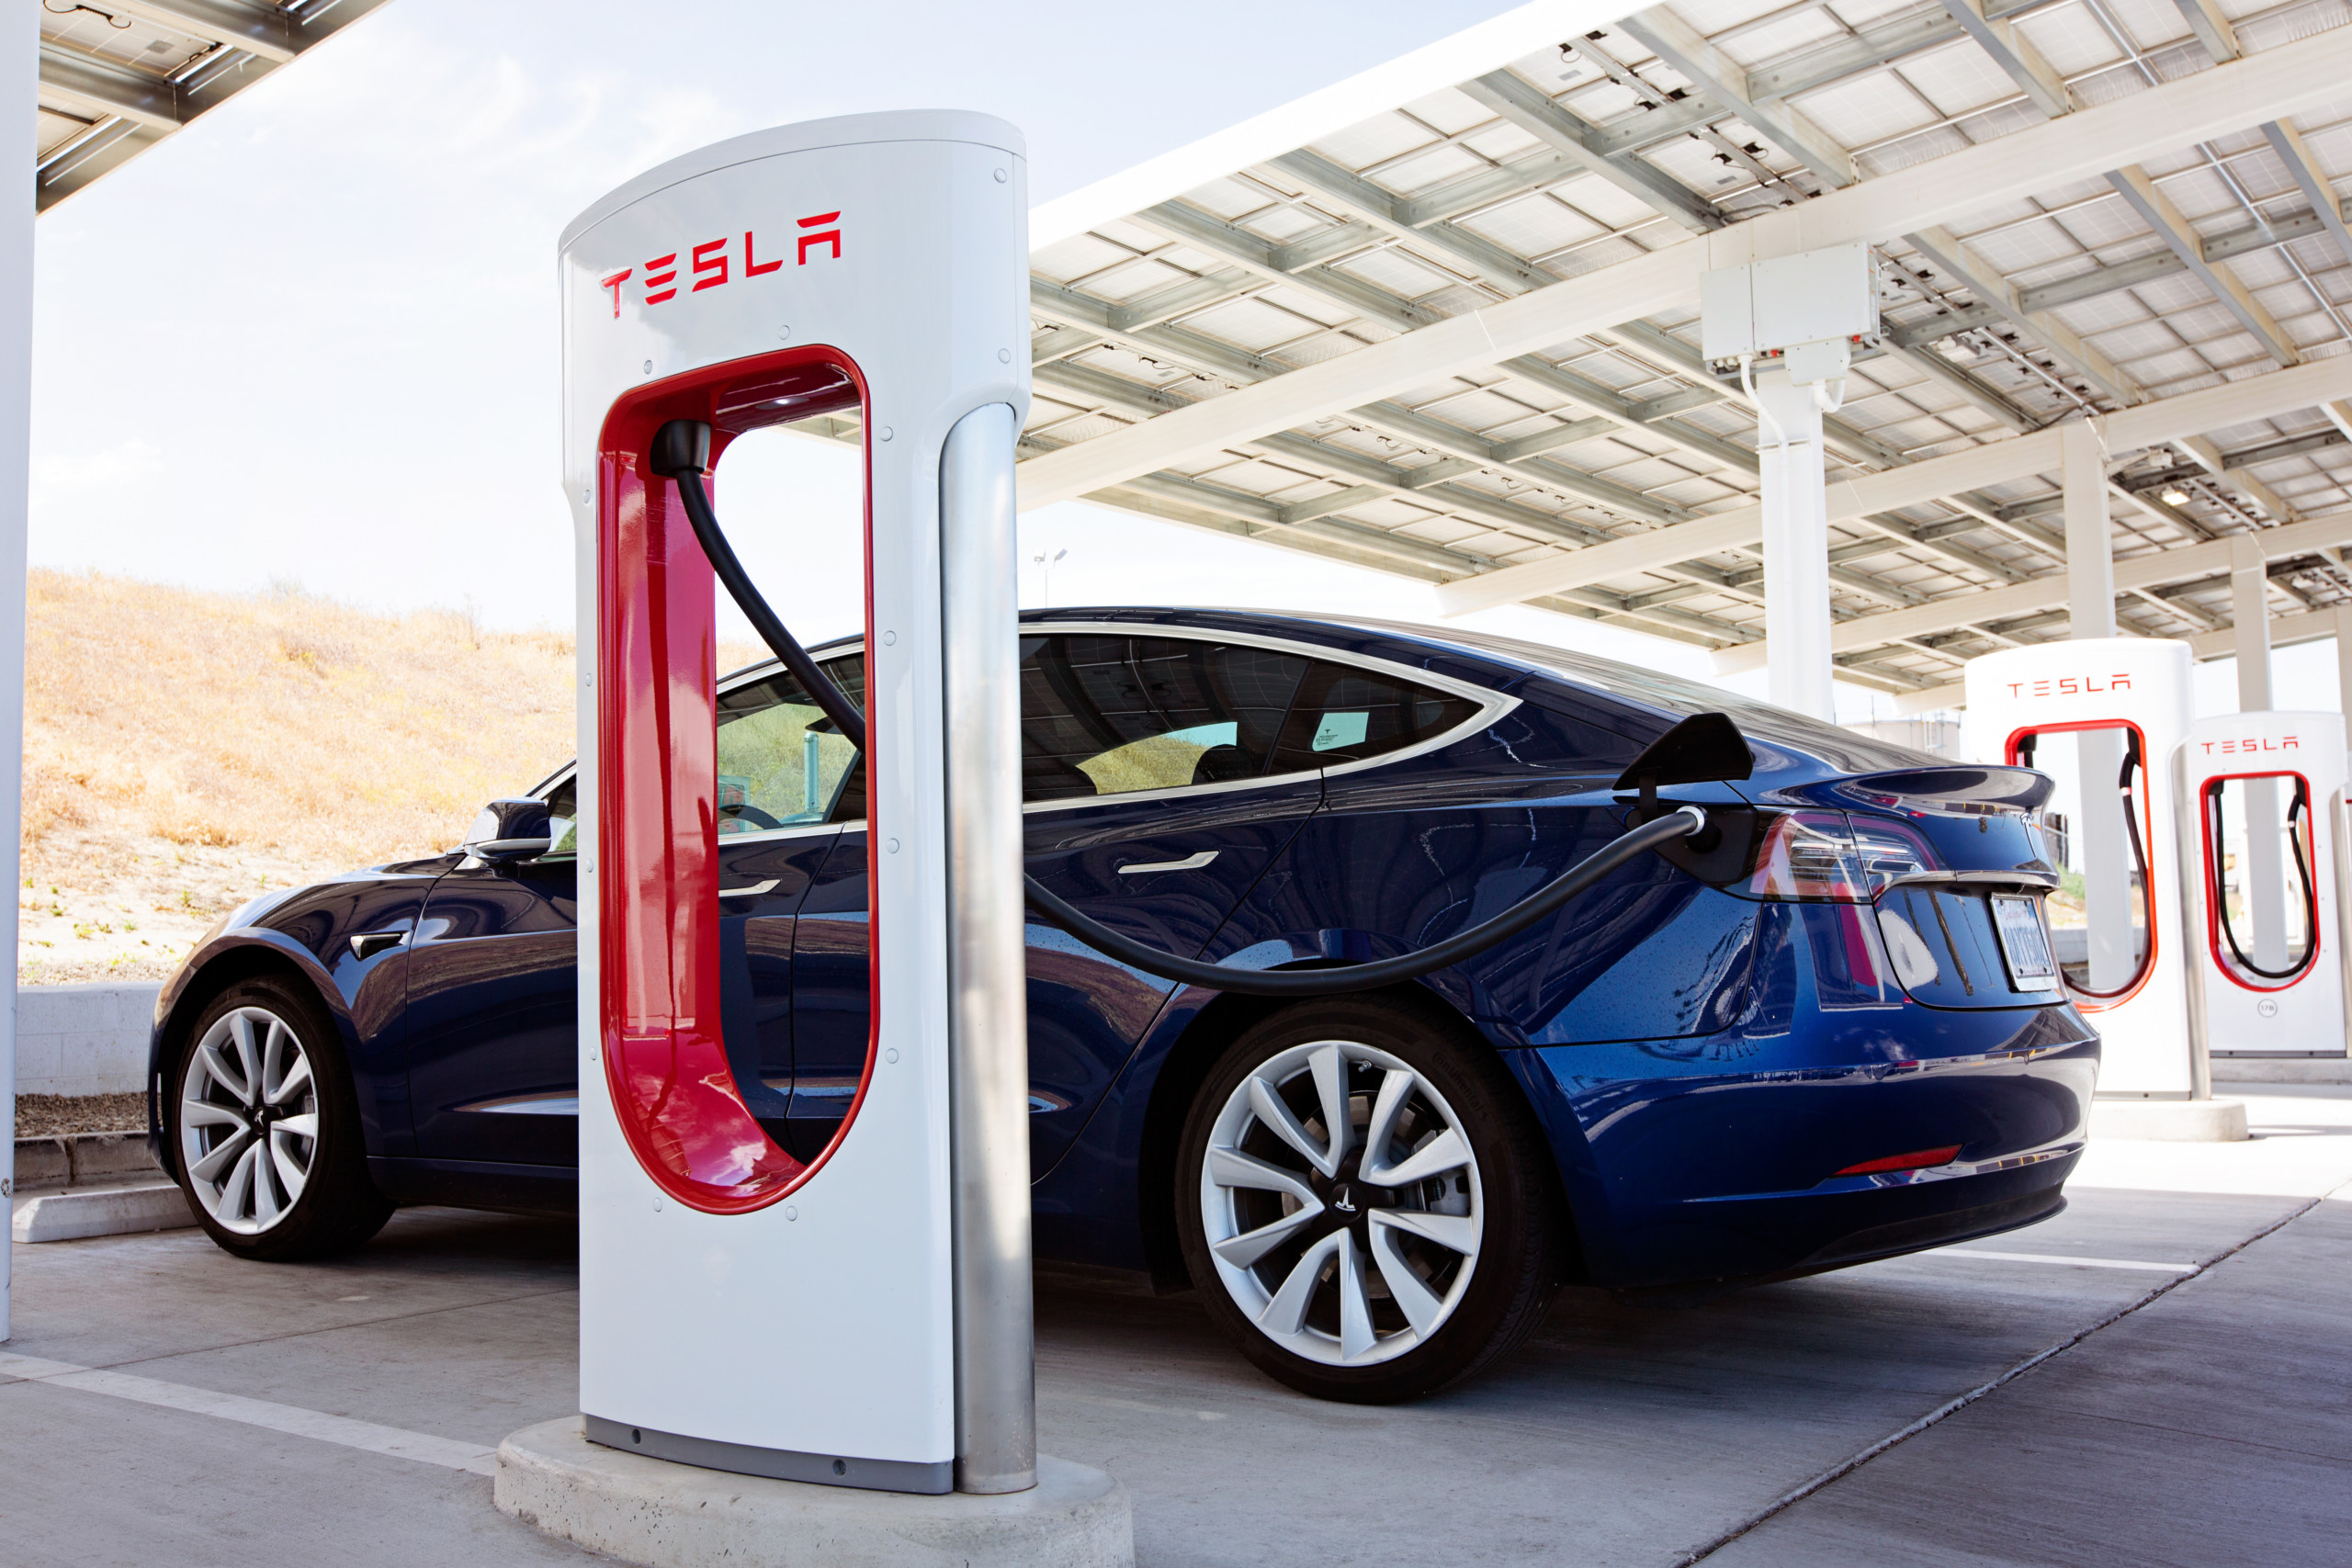 Anteil der verkauften E-Autos in den USA erreichen Rekordwert – Teslas Markanteil sinkt dabei auf einen historischen Tiefstand